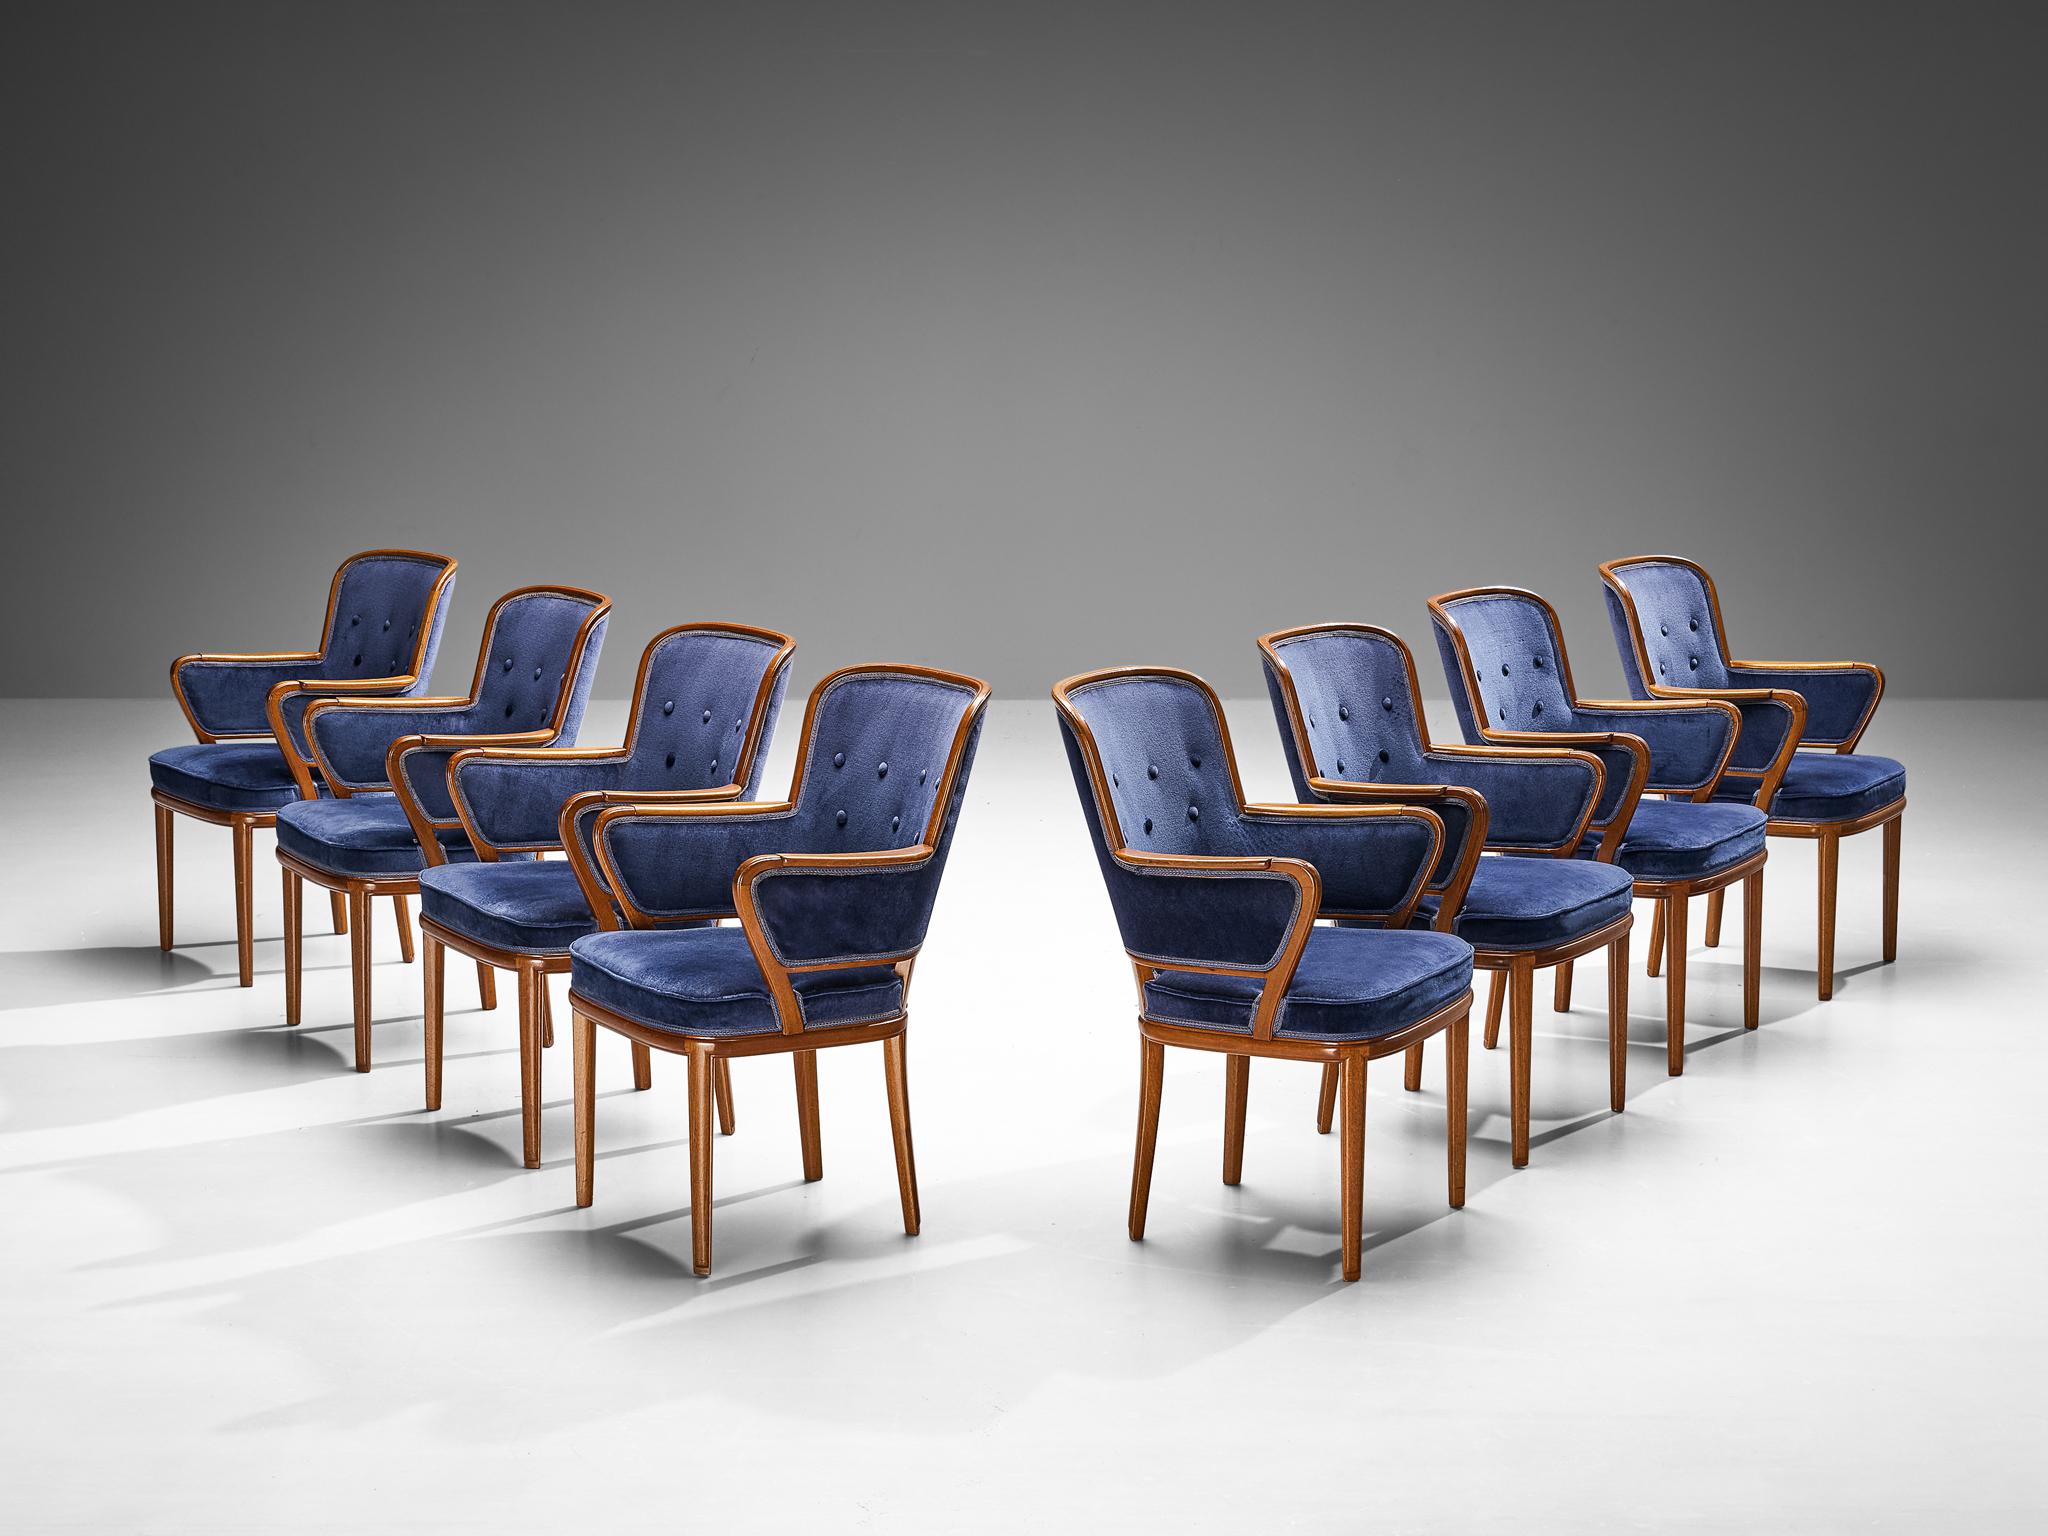 Carl Malmsten, Satz von acht Sesseln, Mahagoni, blauer Samt, Schweden, 1940er Jahre

Sessel des schwedischen Designers Carl Malmsten, die nur schwer zu bekommen sind. Das Gestell dieser Stühle besteht aus warmem Mahagoni, dessen Maserung sich zum